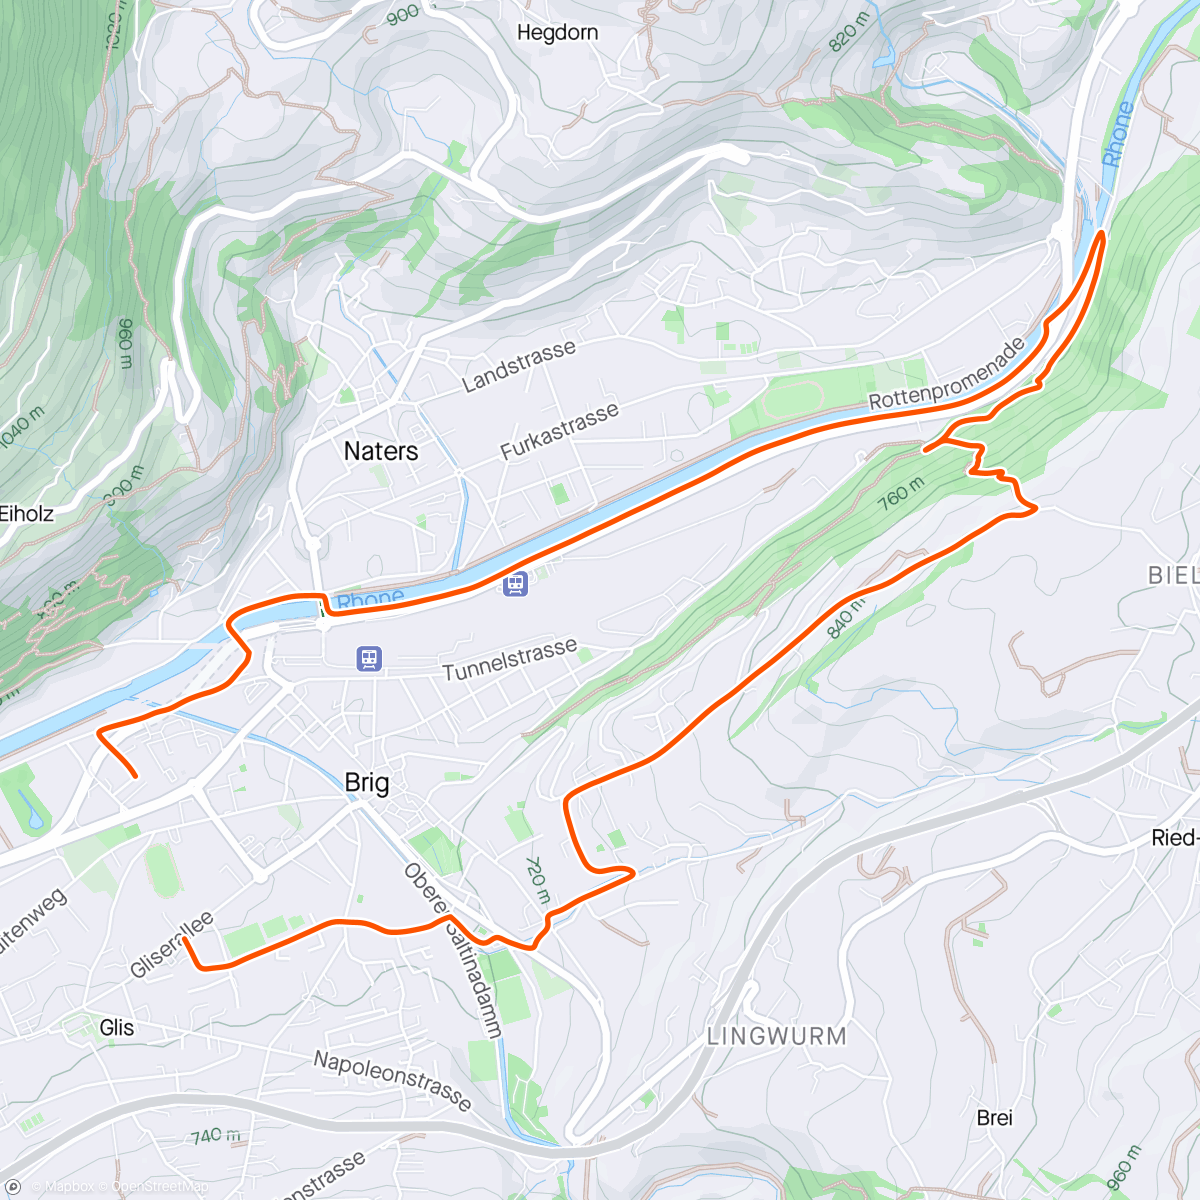 Mapa da atividade, Glis-Naters-Termen-Glis